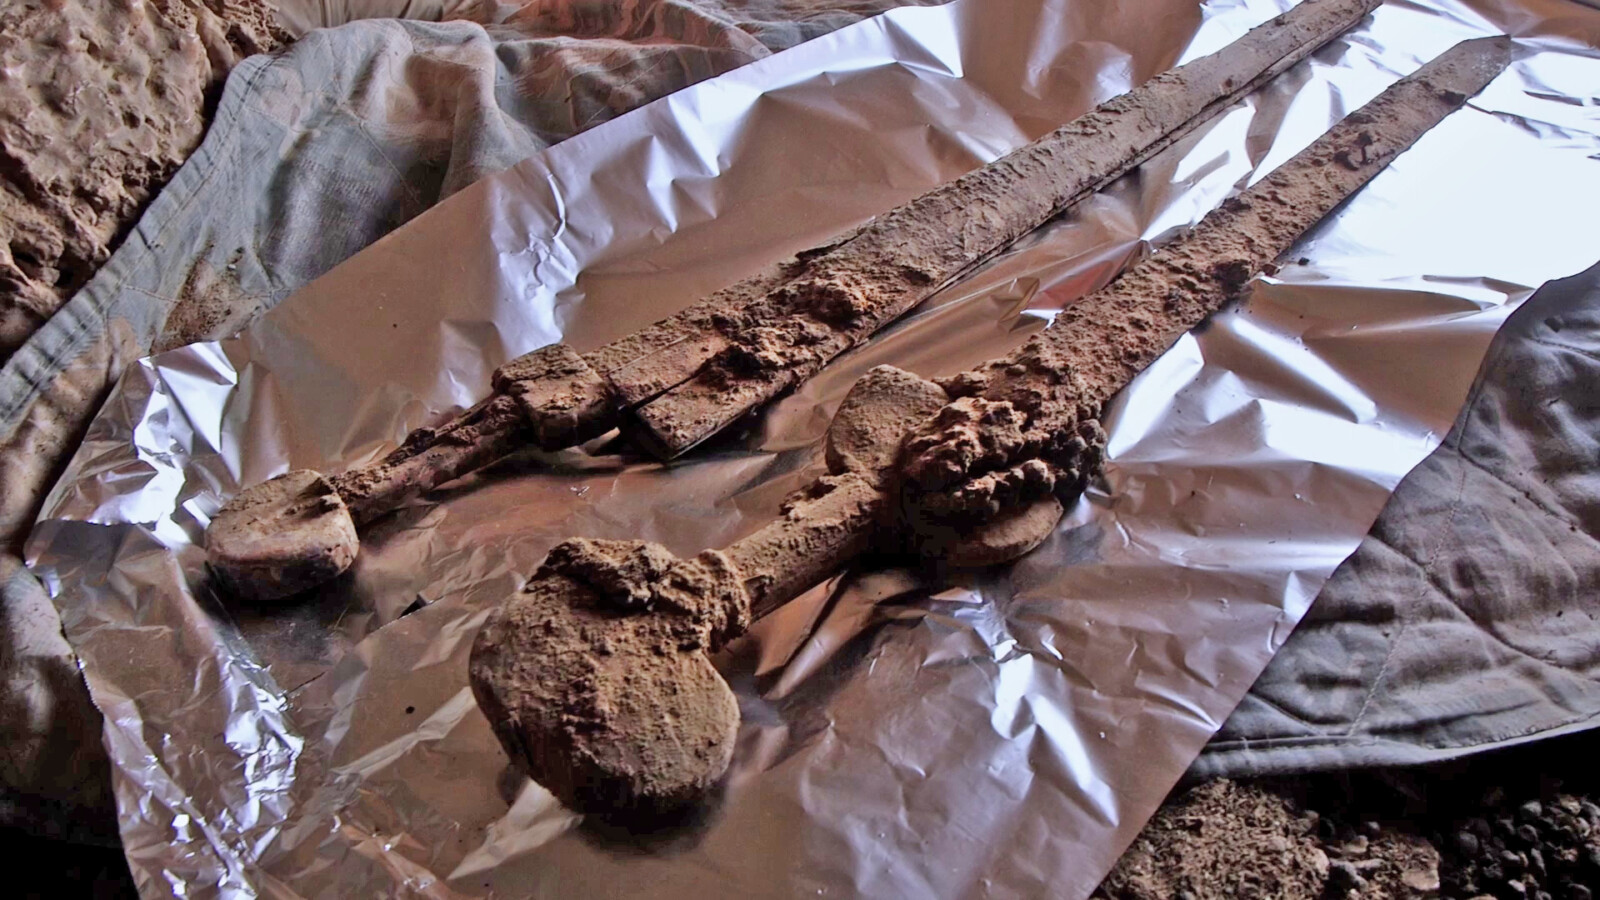 שתיים מהחרבות, עדיין בתוך המערה (צילום: אמיל אלג'ם, רשות העתיקות)